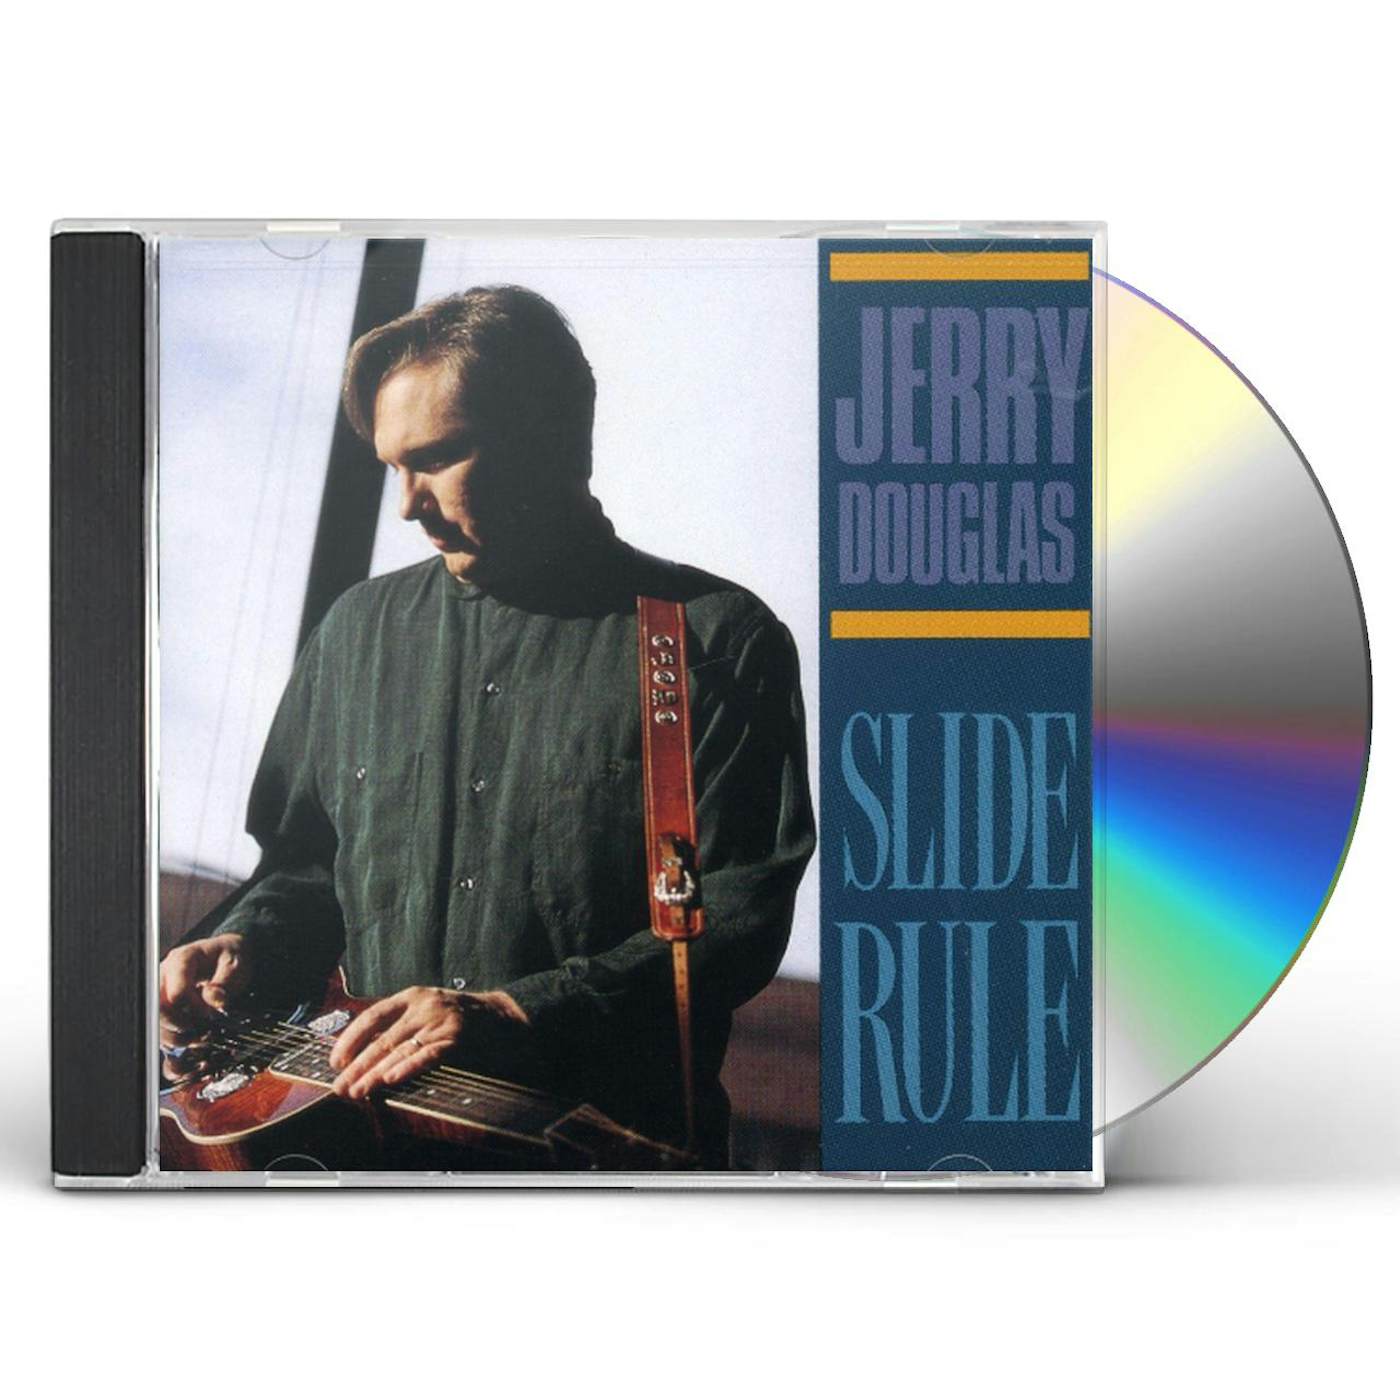 Jerry Douglas SLIDE RULE CD